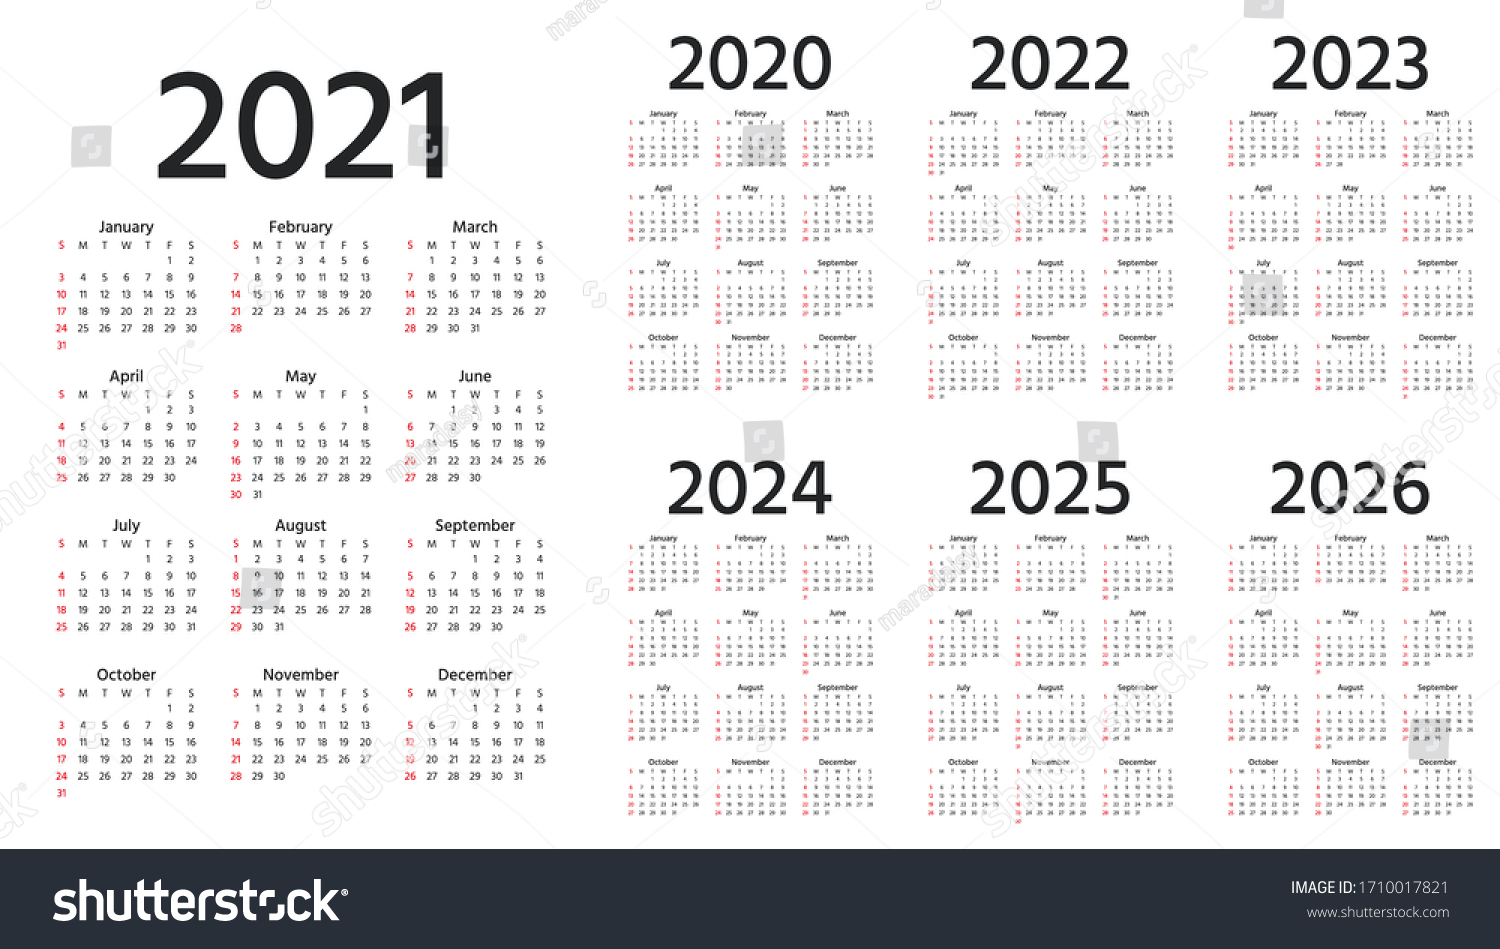 Svvsd Calendar 20222023 Catholic liturgical calendar 2022